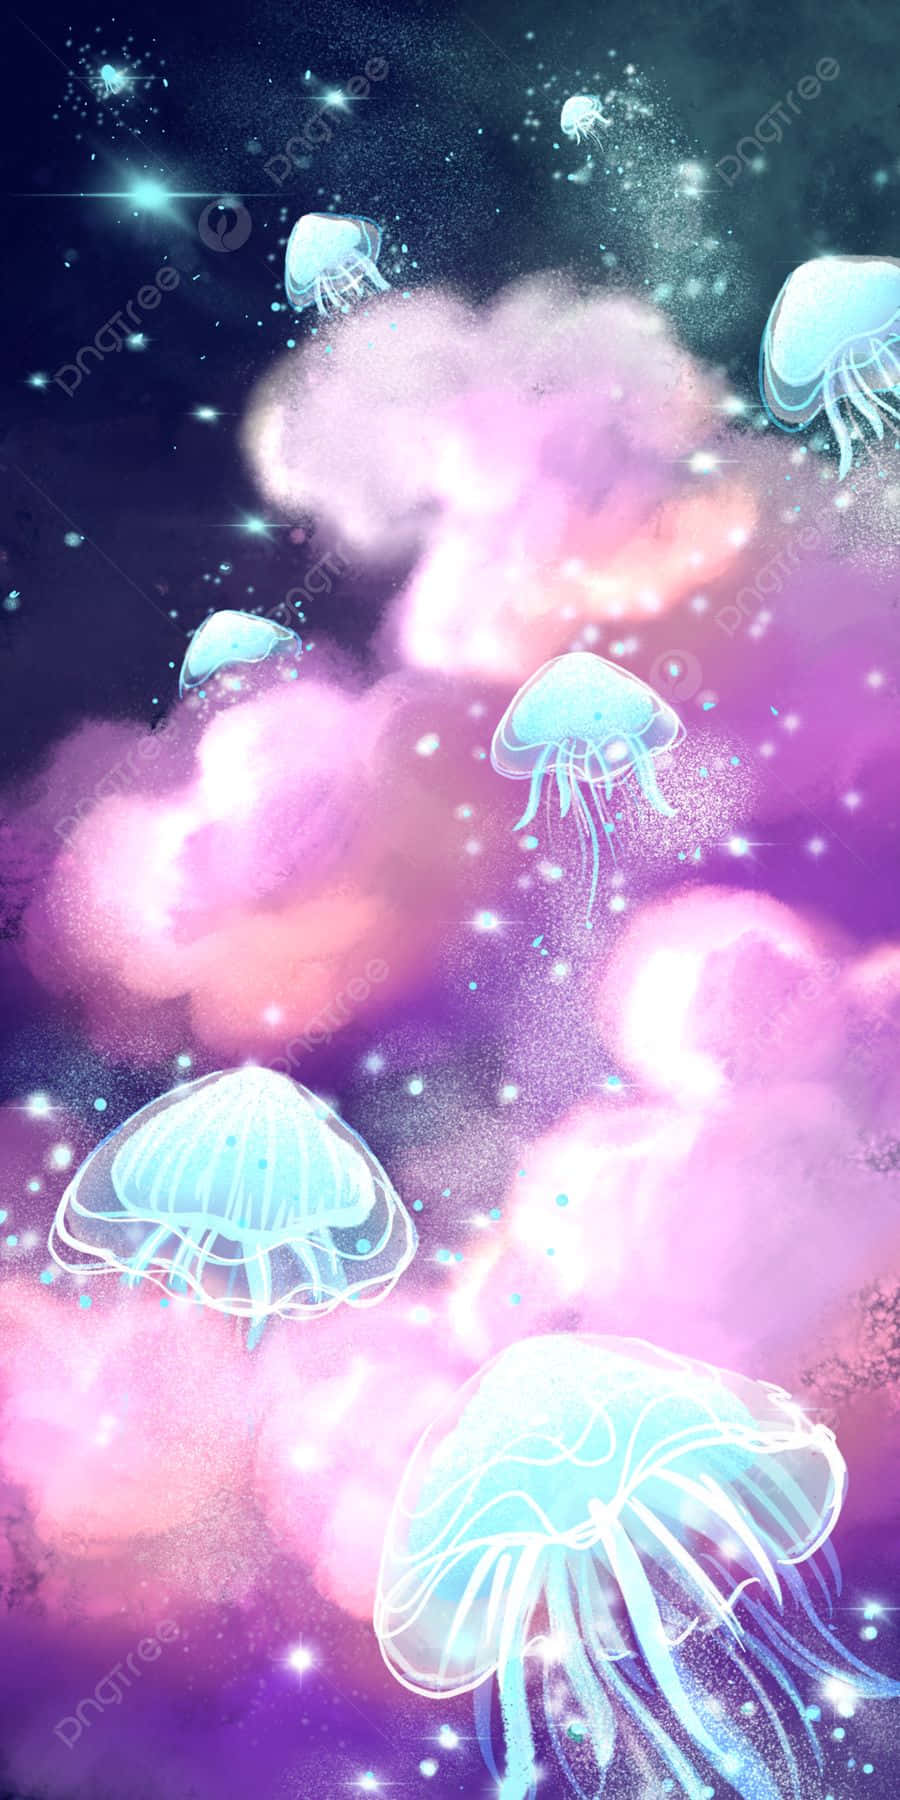 Cosmic_ Jellyfish_ Dreamscape.jpg Wallpaper